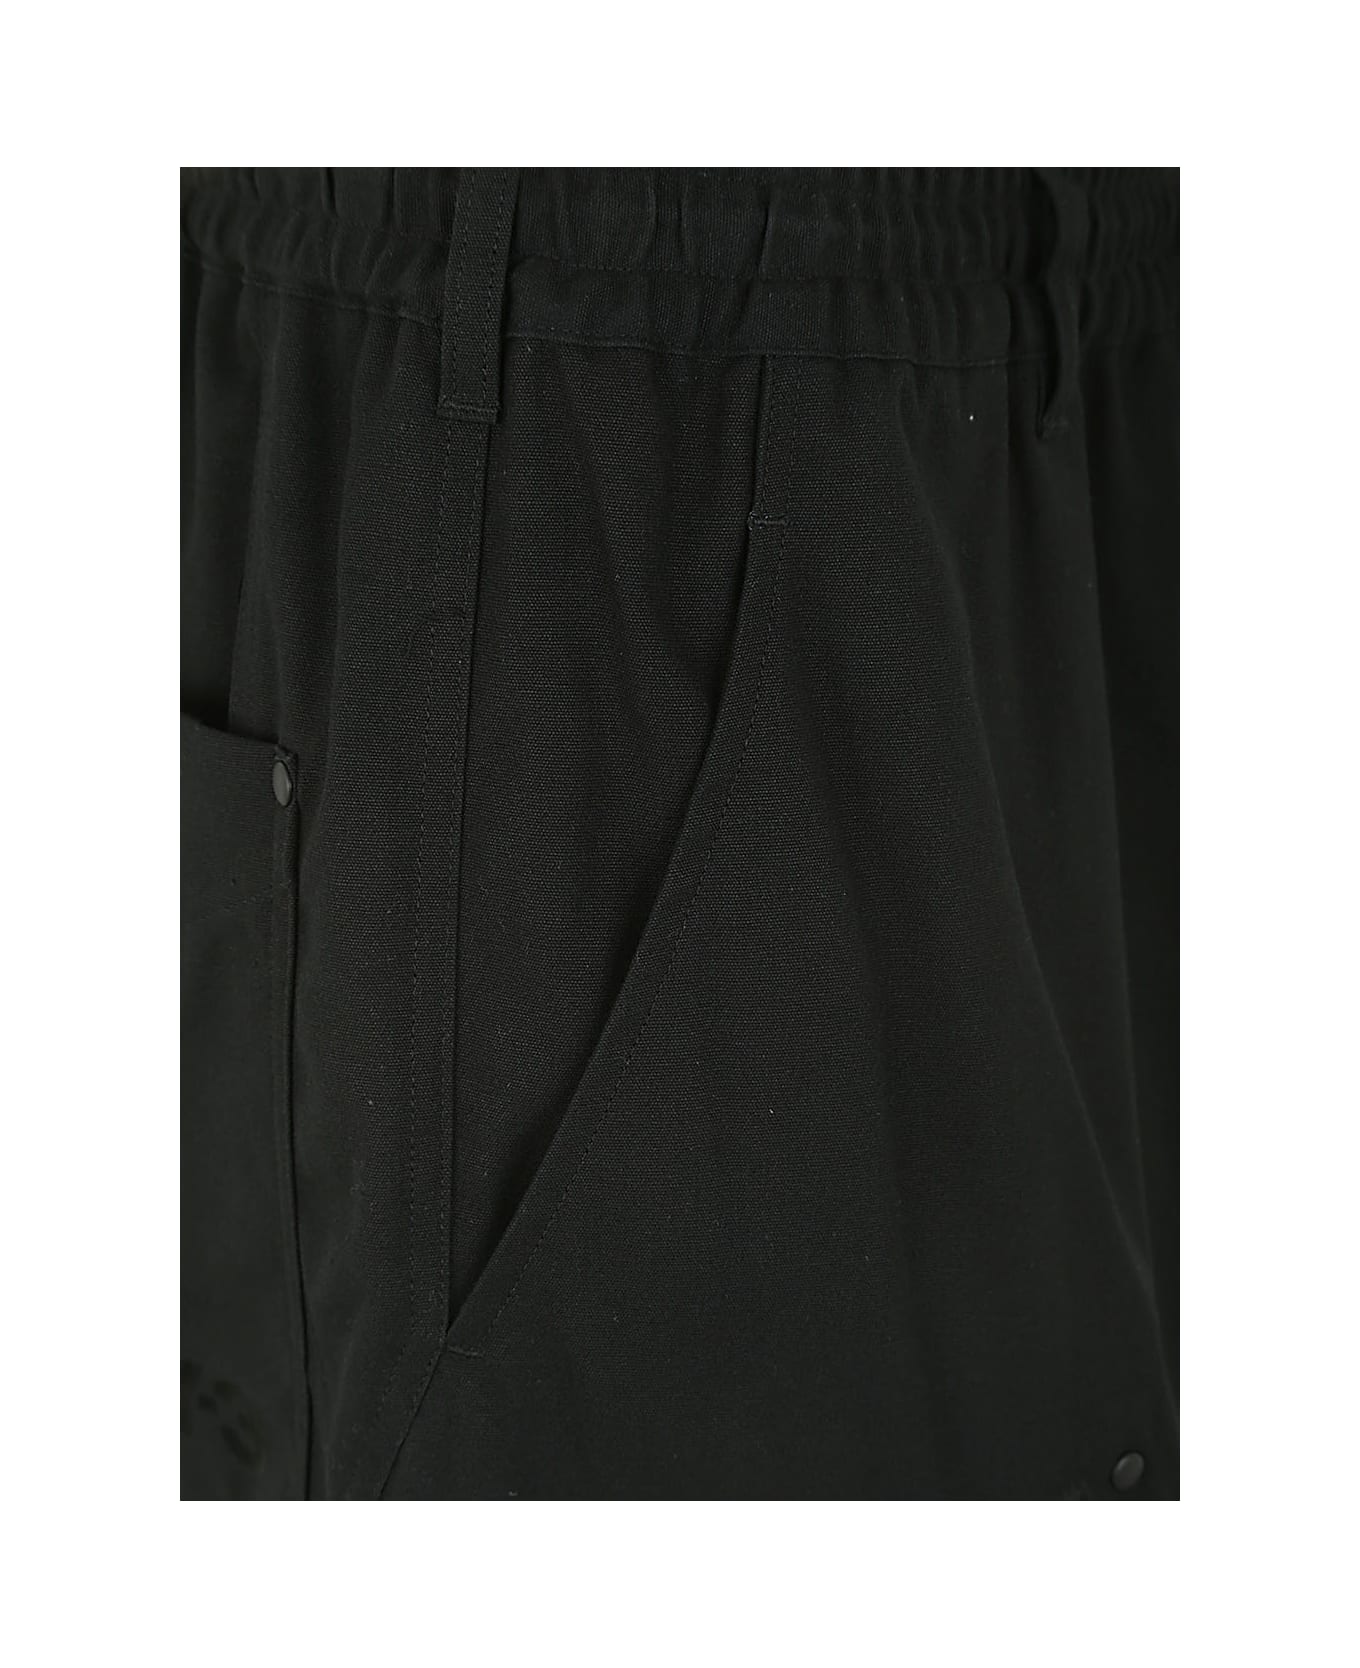 Y-3 Workwear Shorts - Black